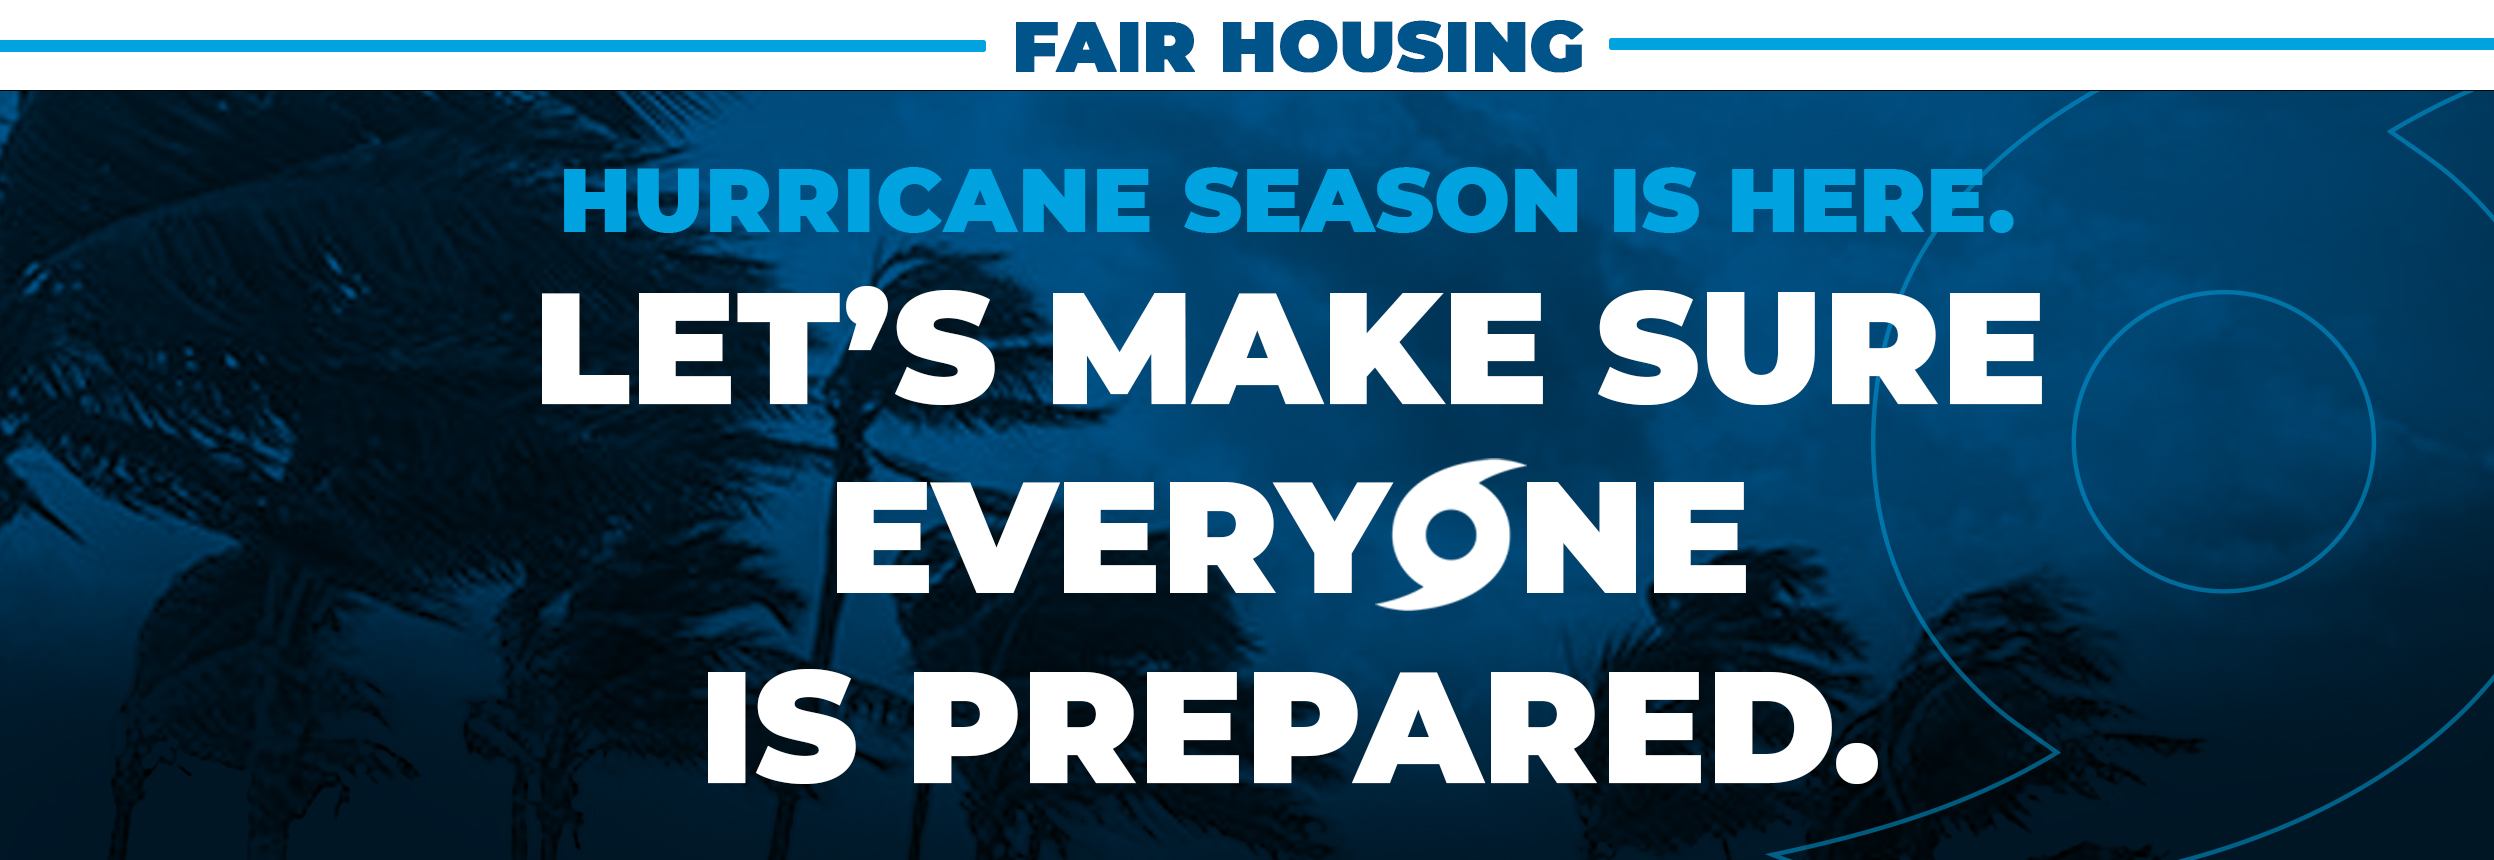 2022 Fair Housing & Hurricane Season Preparedness Outreach Grant